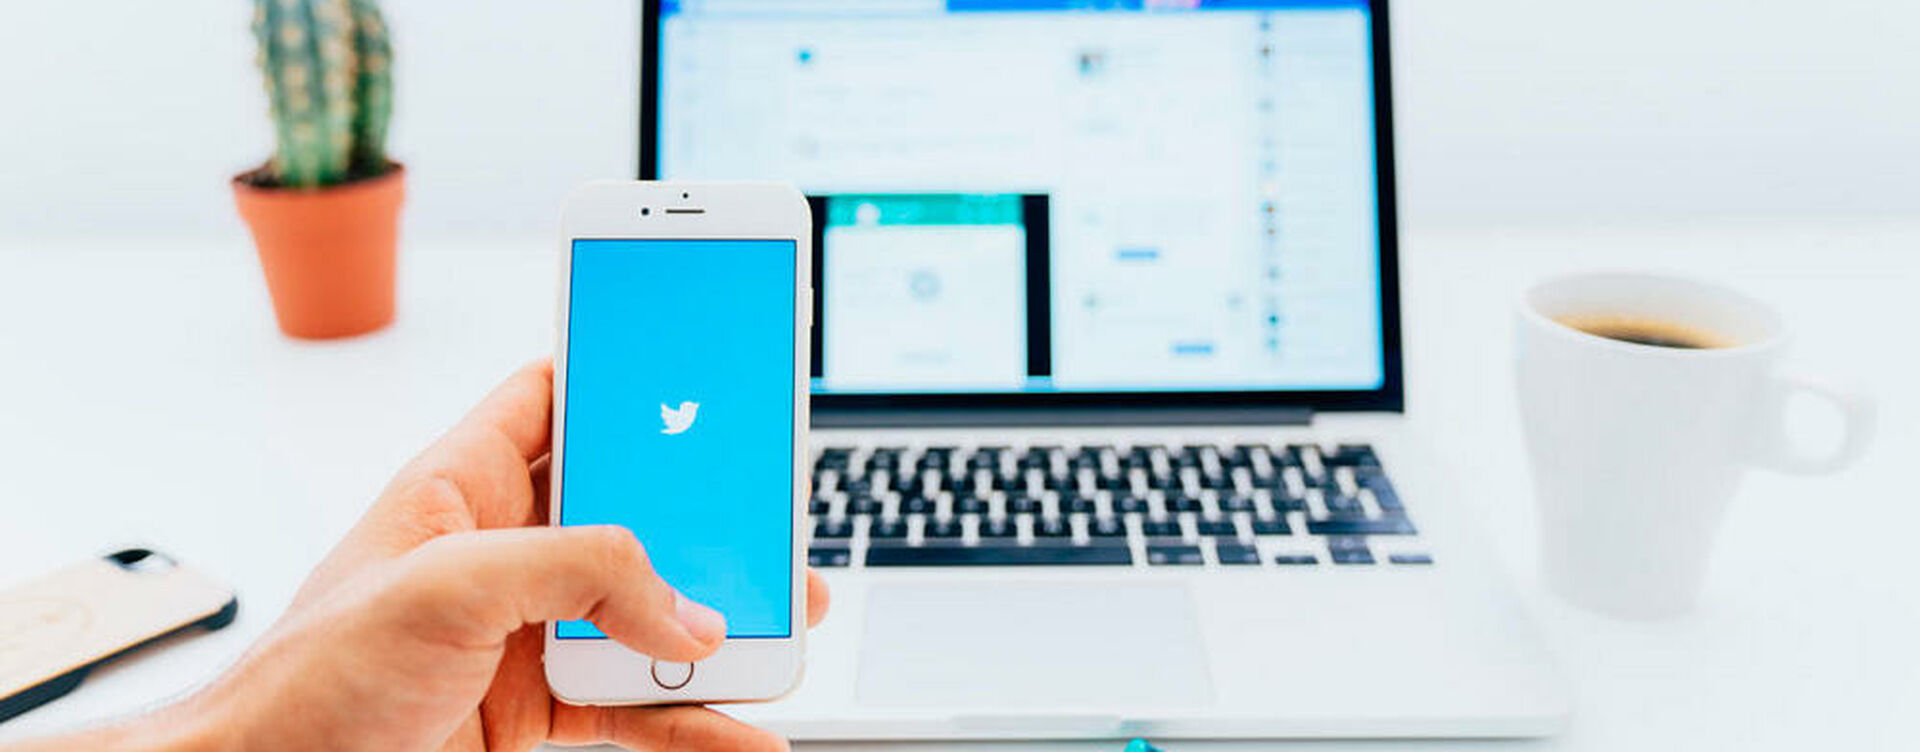 Как накрутить лайки Twitter и ретвиты: тайны продвижения